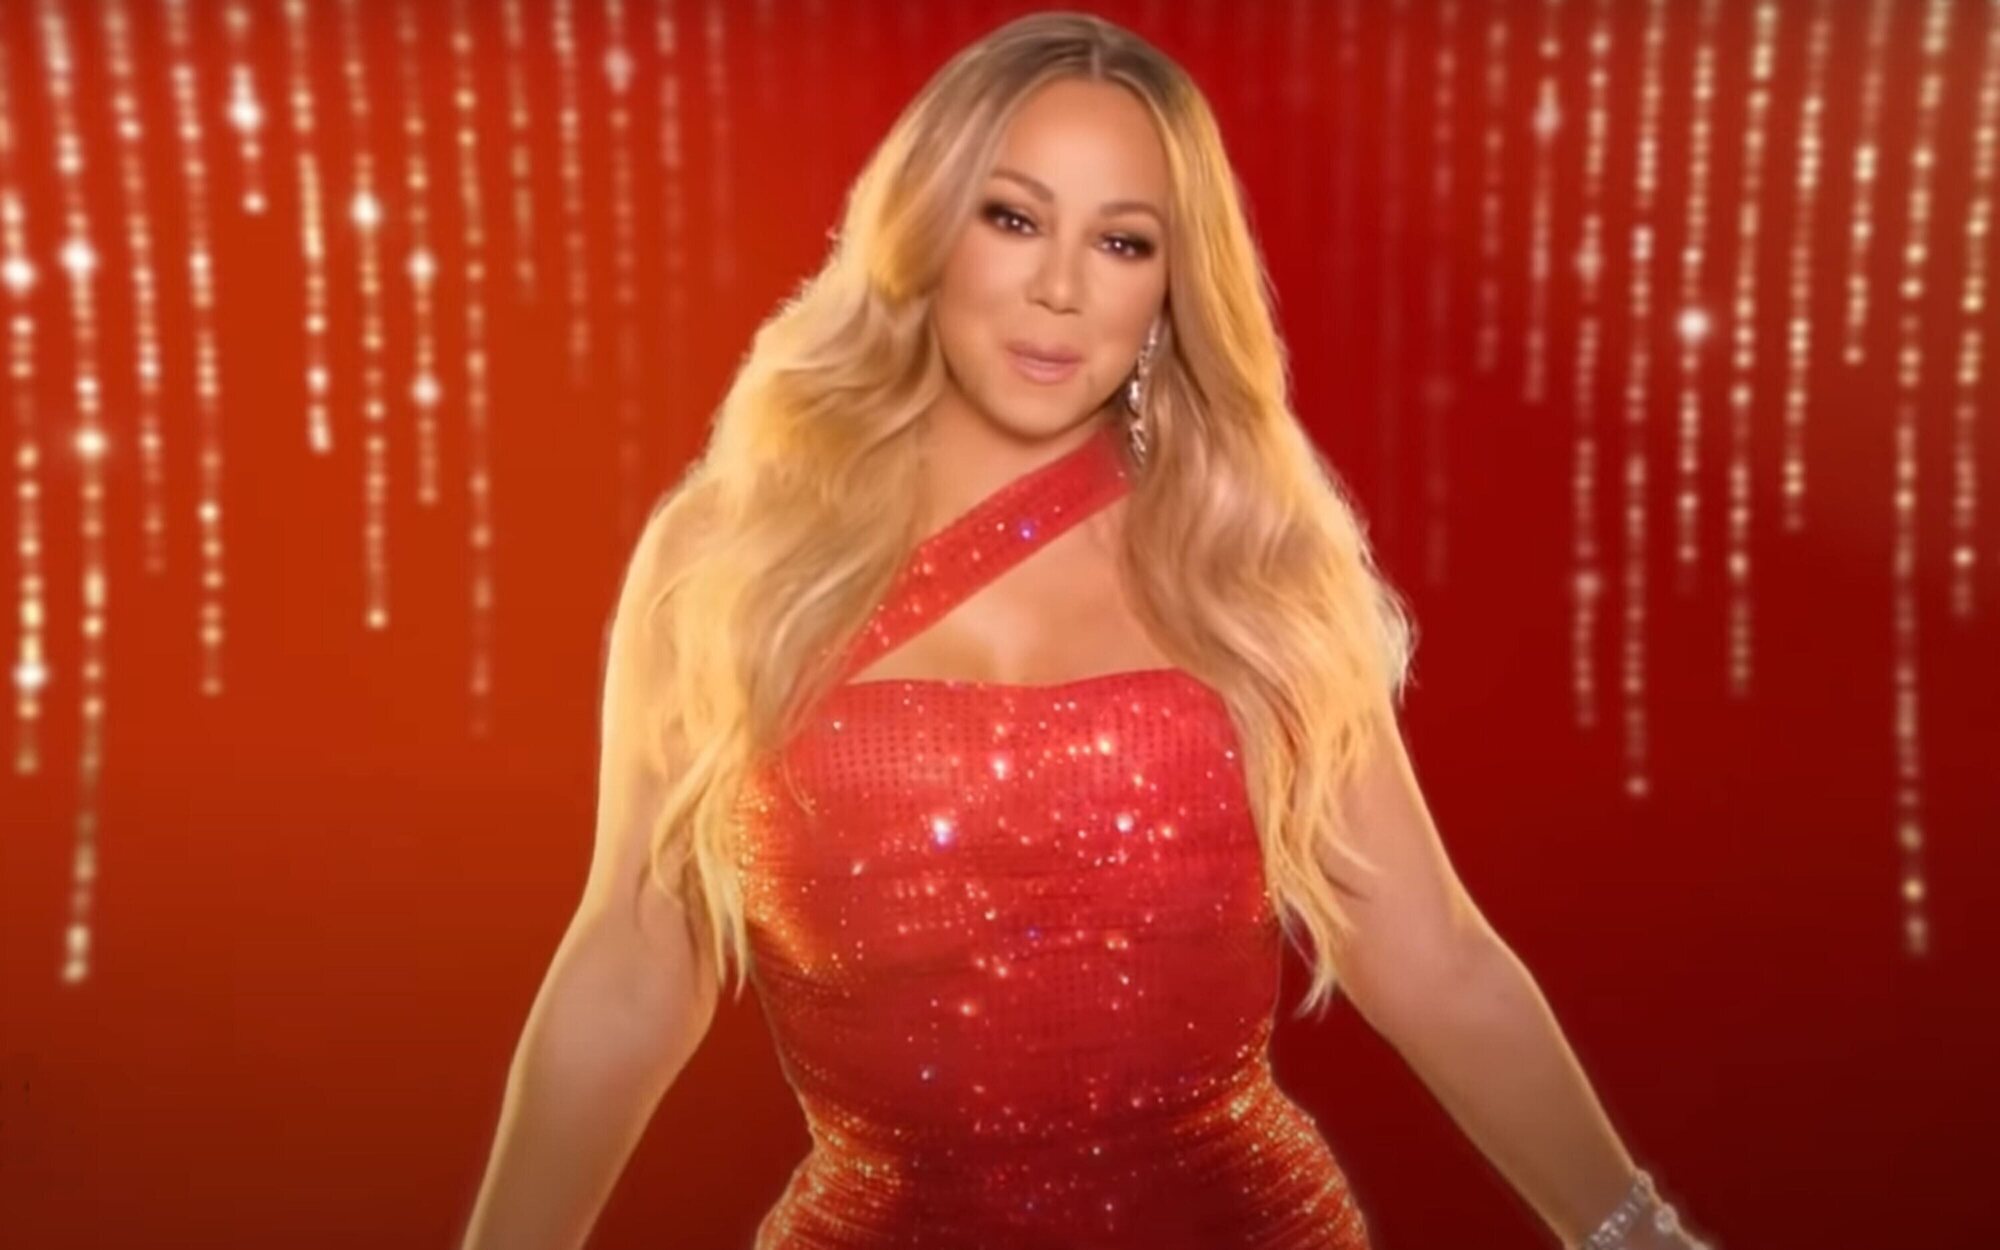 Mariah Carey se suma a la moda de lanzar menús con McDonald's